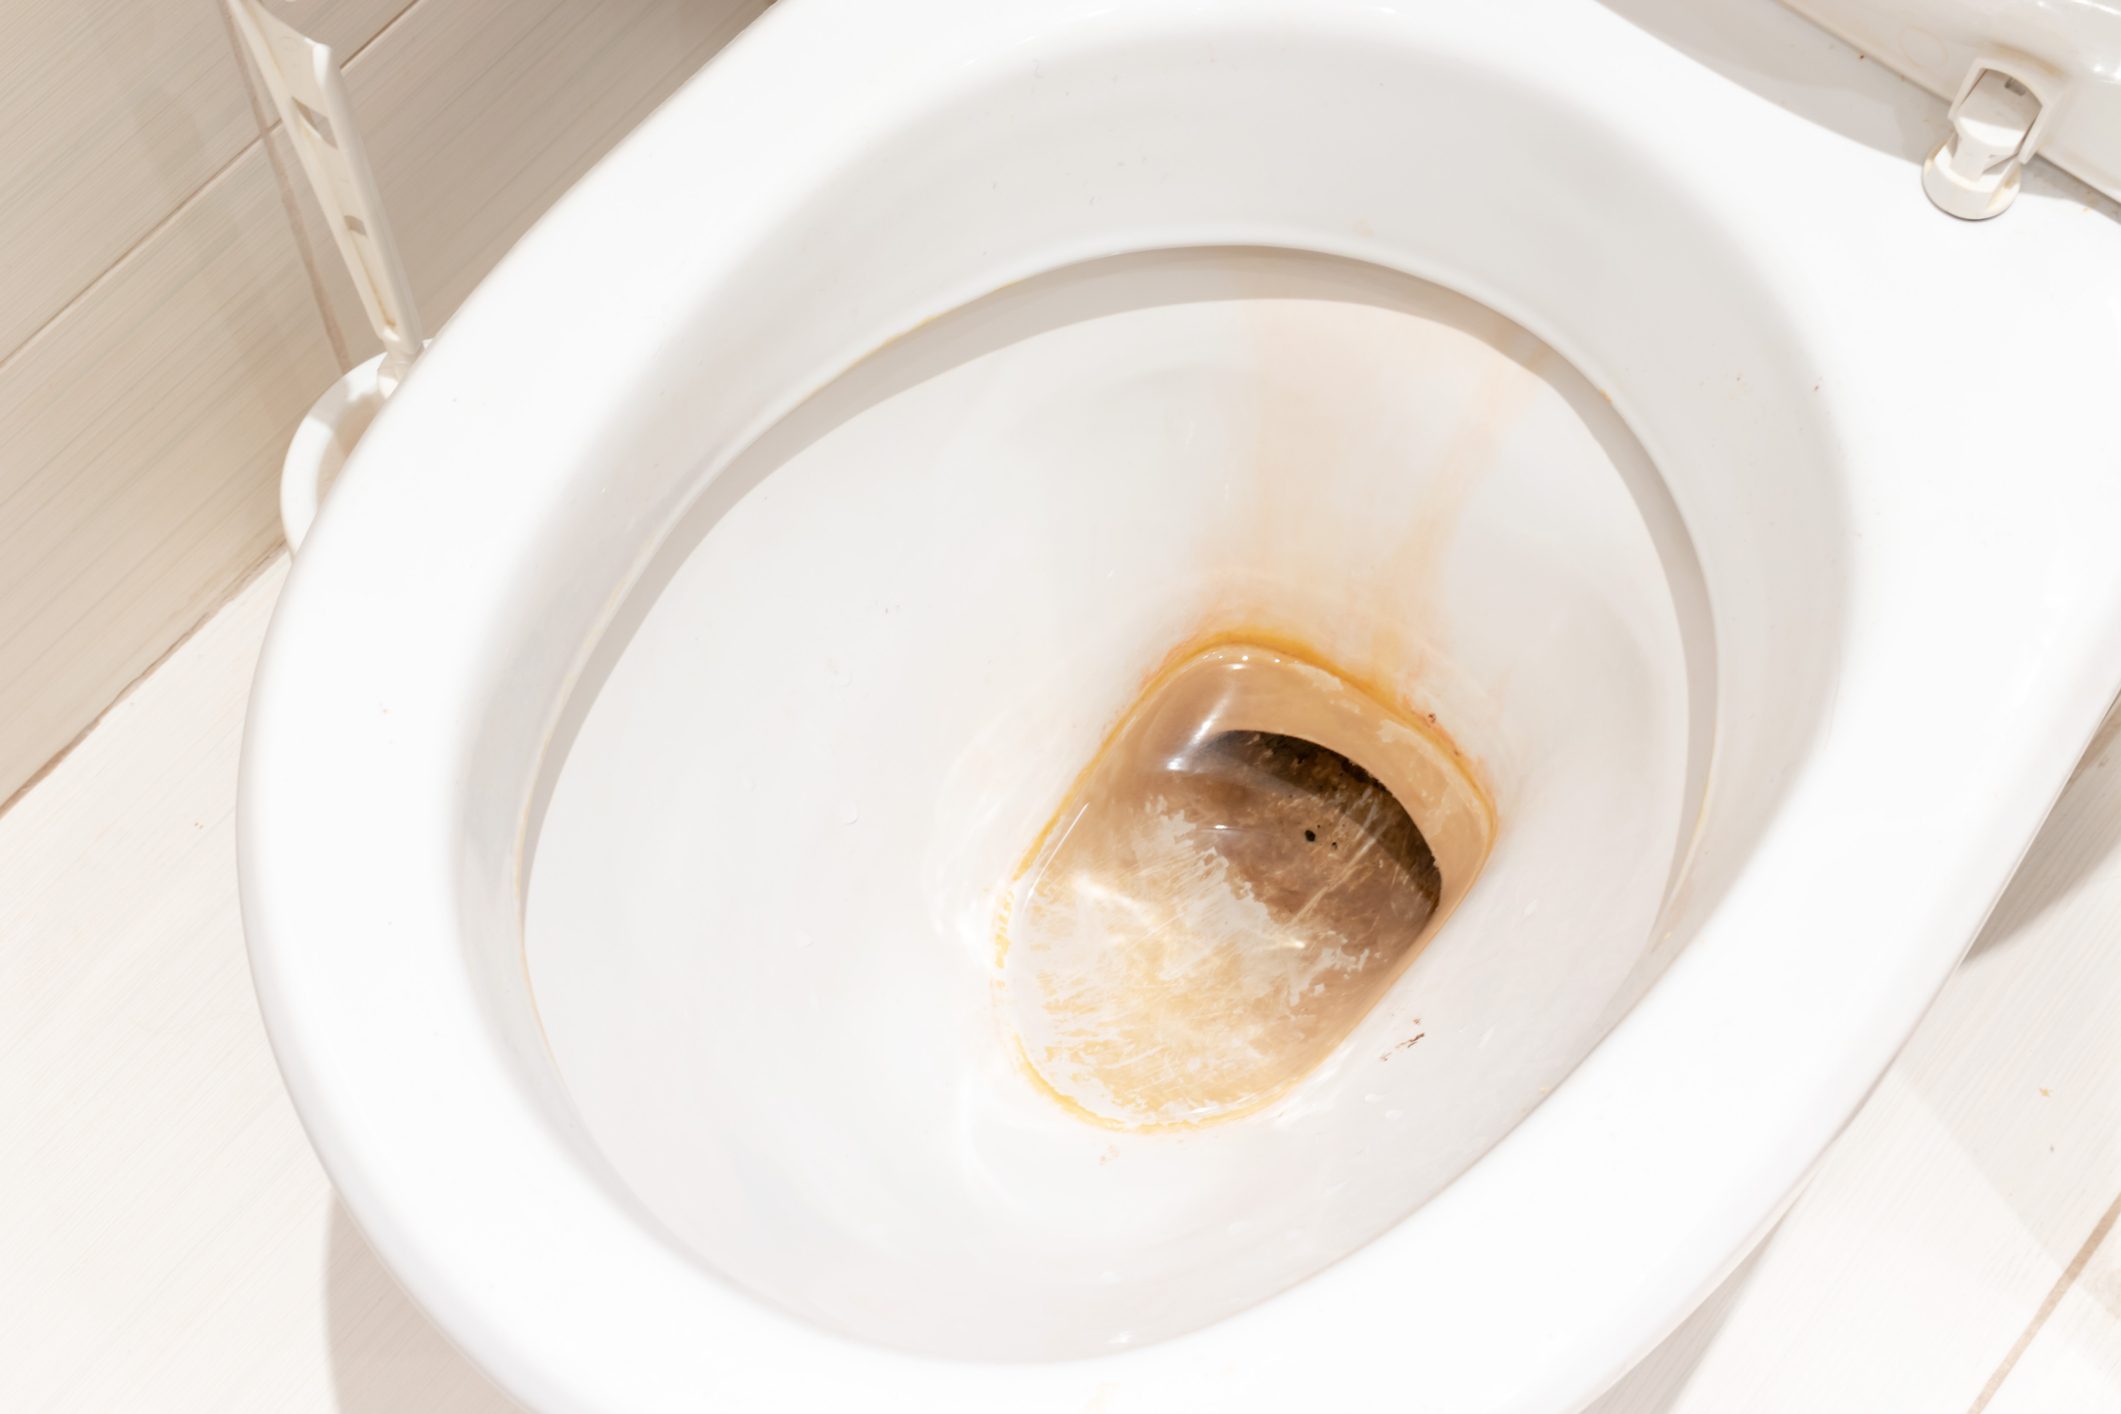 公共厕所脏污不卫生的抽水马桶有水垢